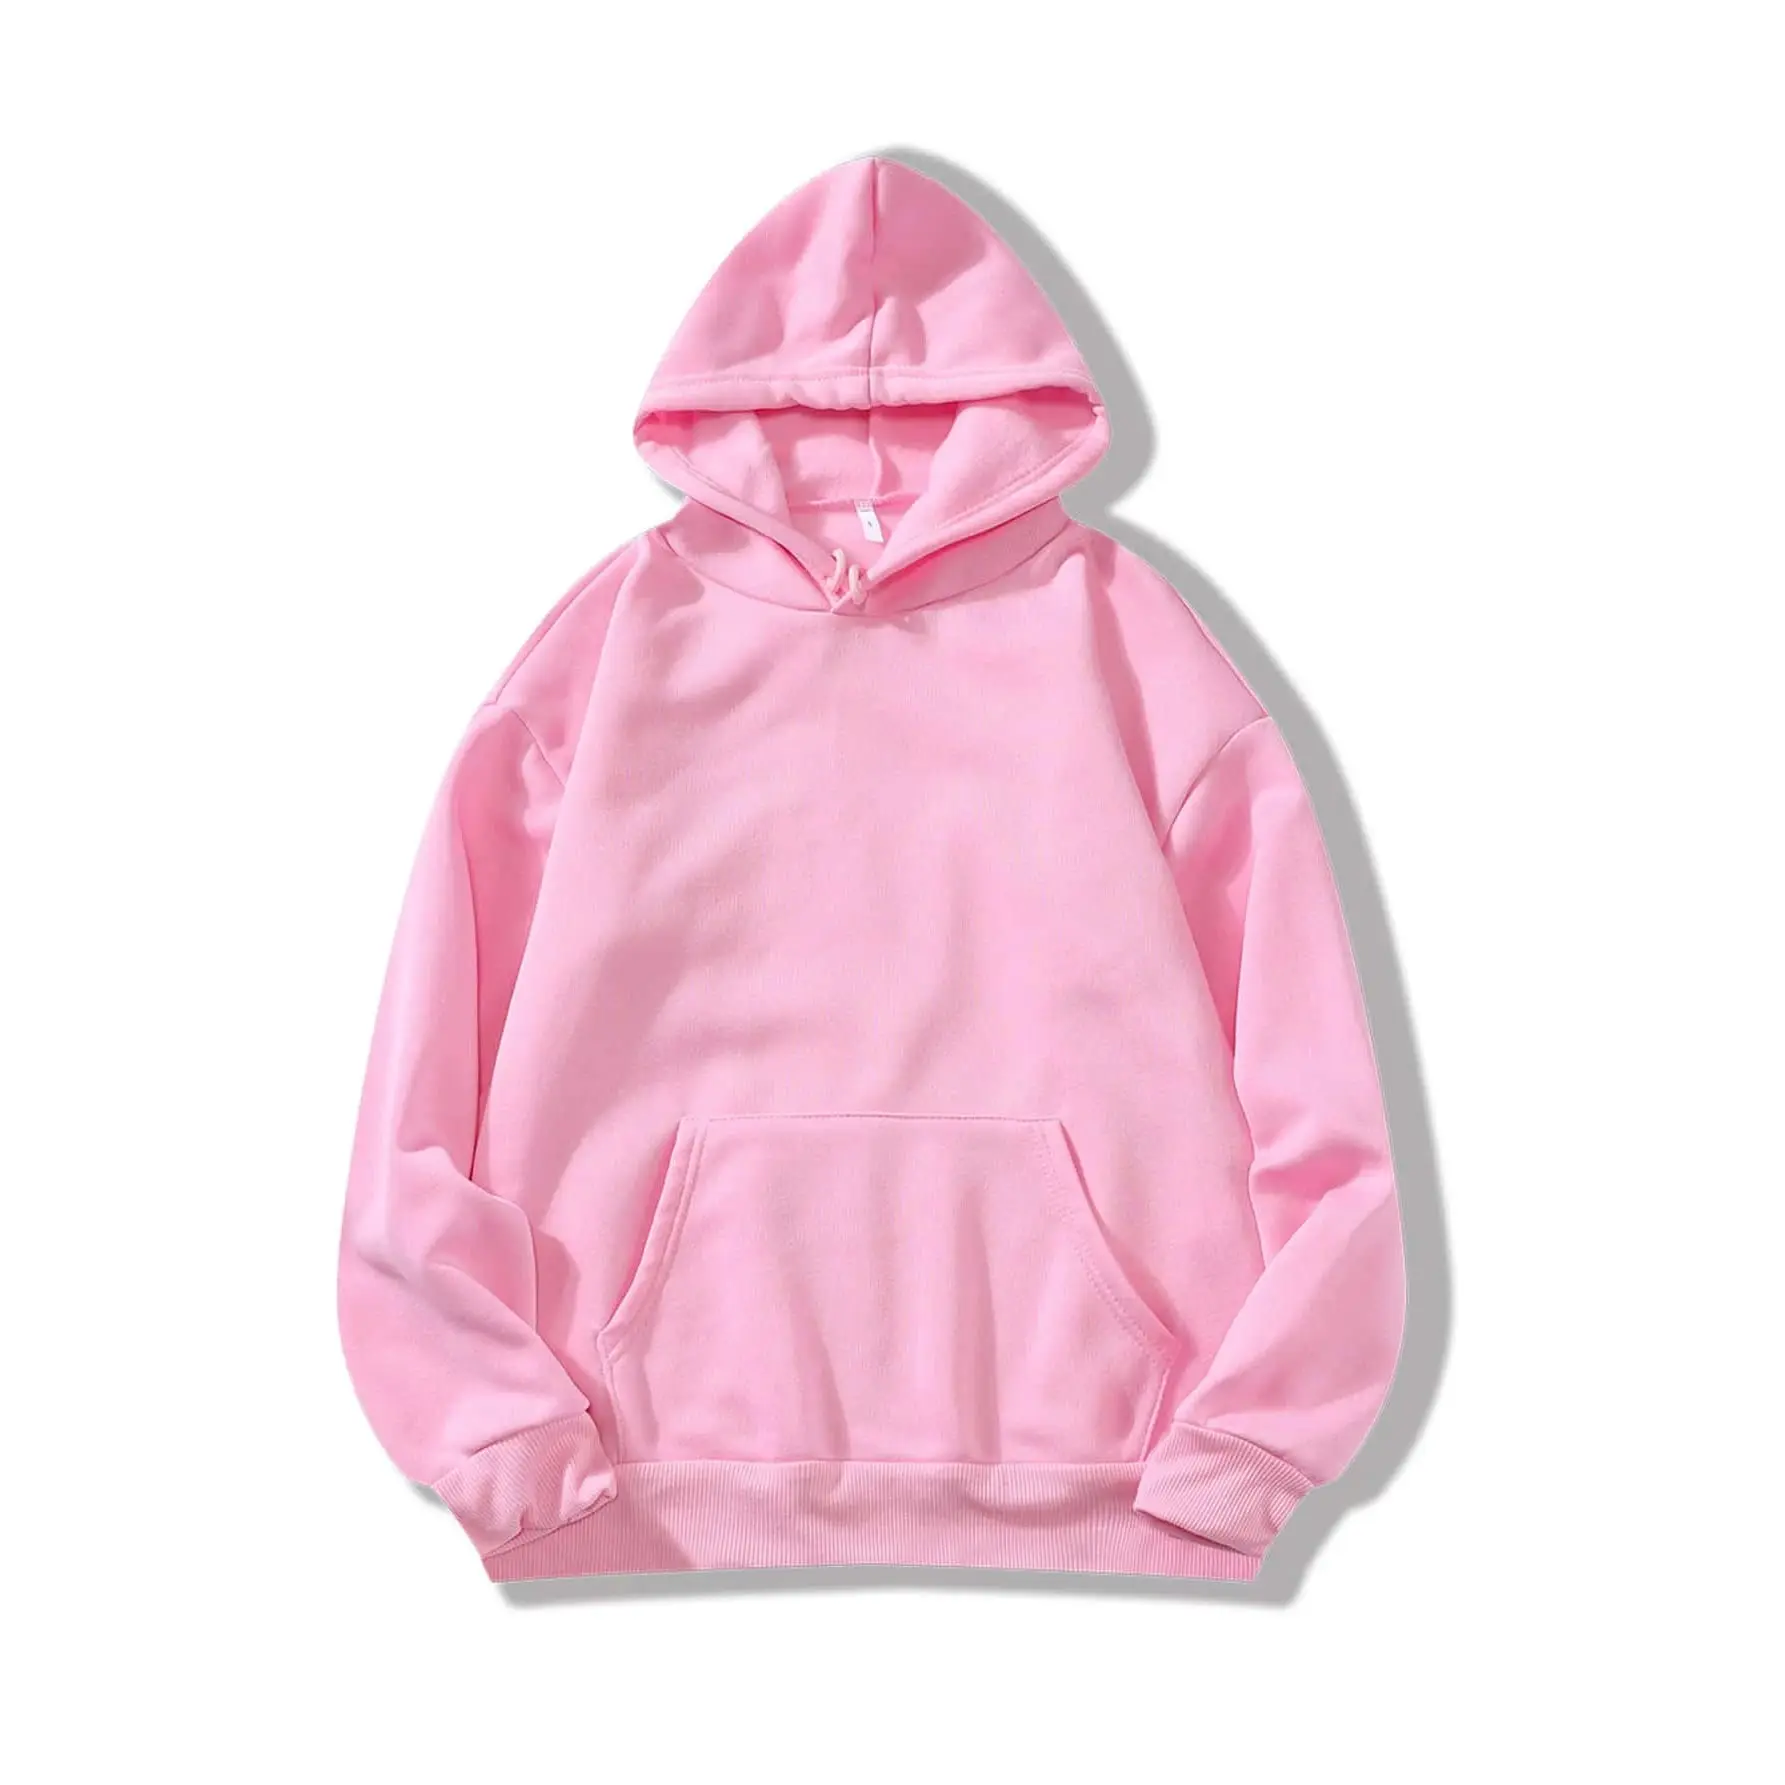 Hochwertige Pullover Baumwolle individuelle Stickerei Logo Herren Übergröße individuelle Boxy Fit Hoodie rosa Farbe